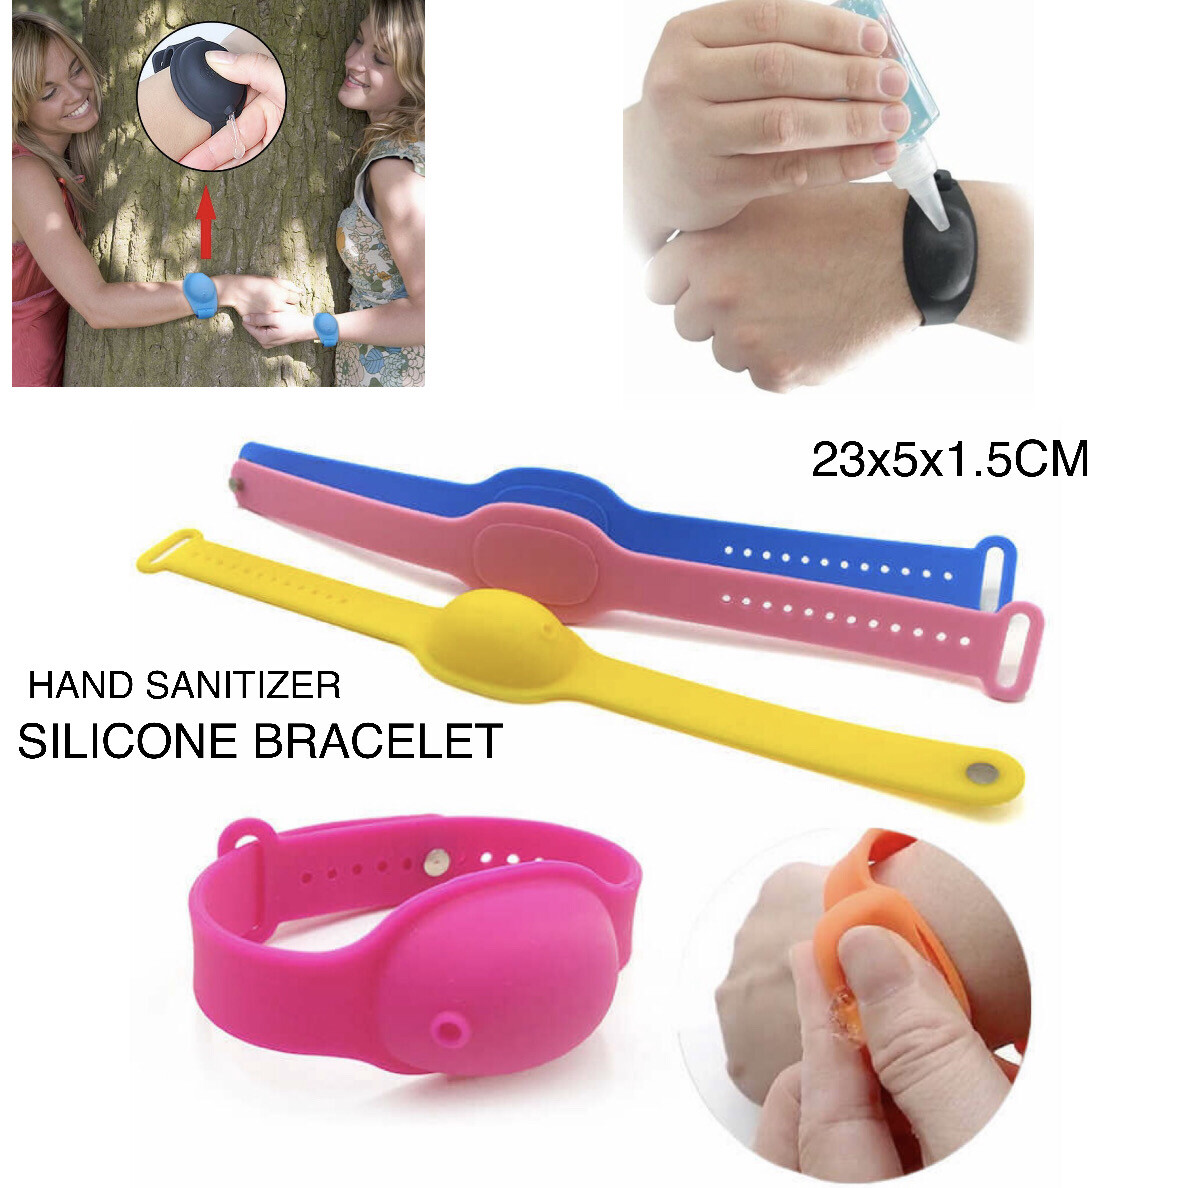 Hand Sanitizer Bracelet